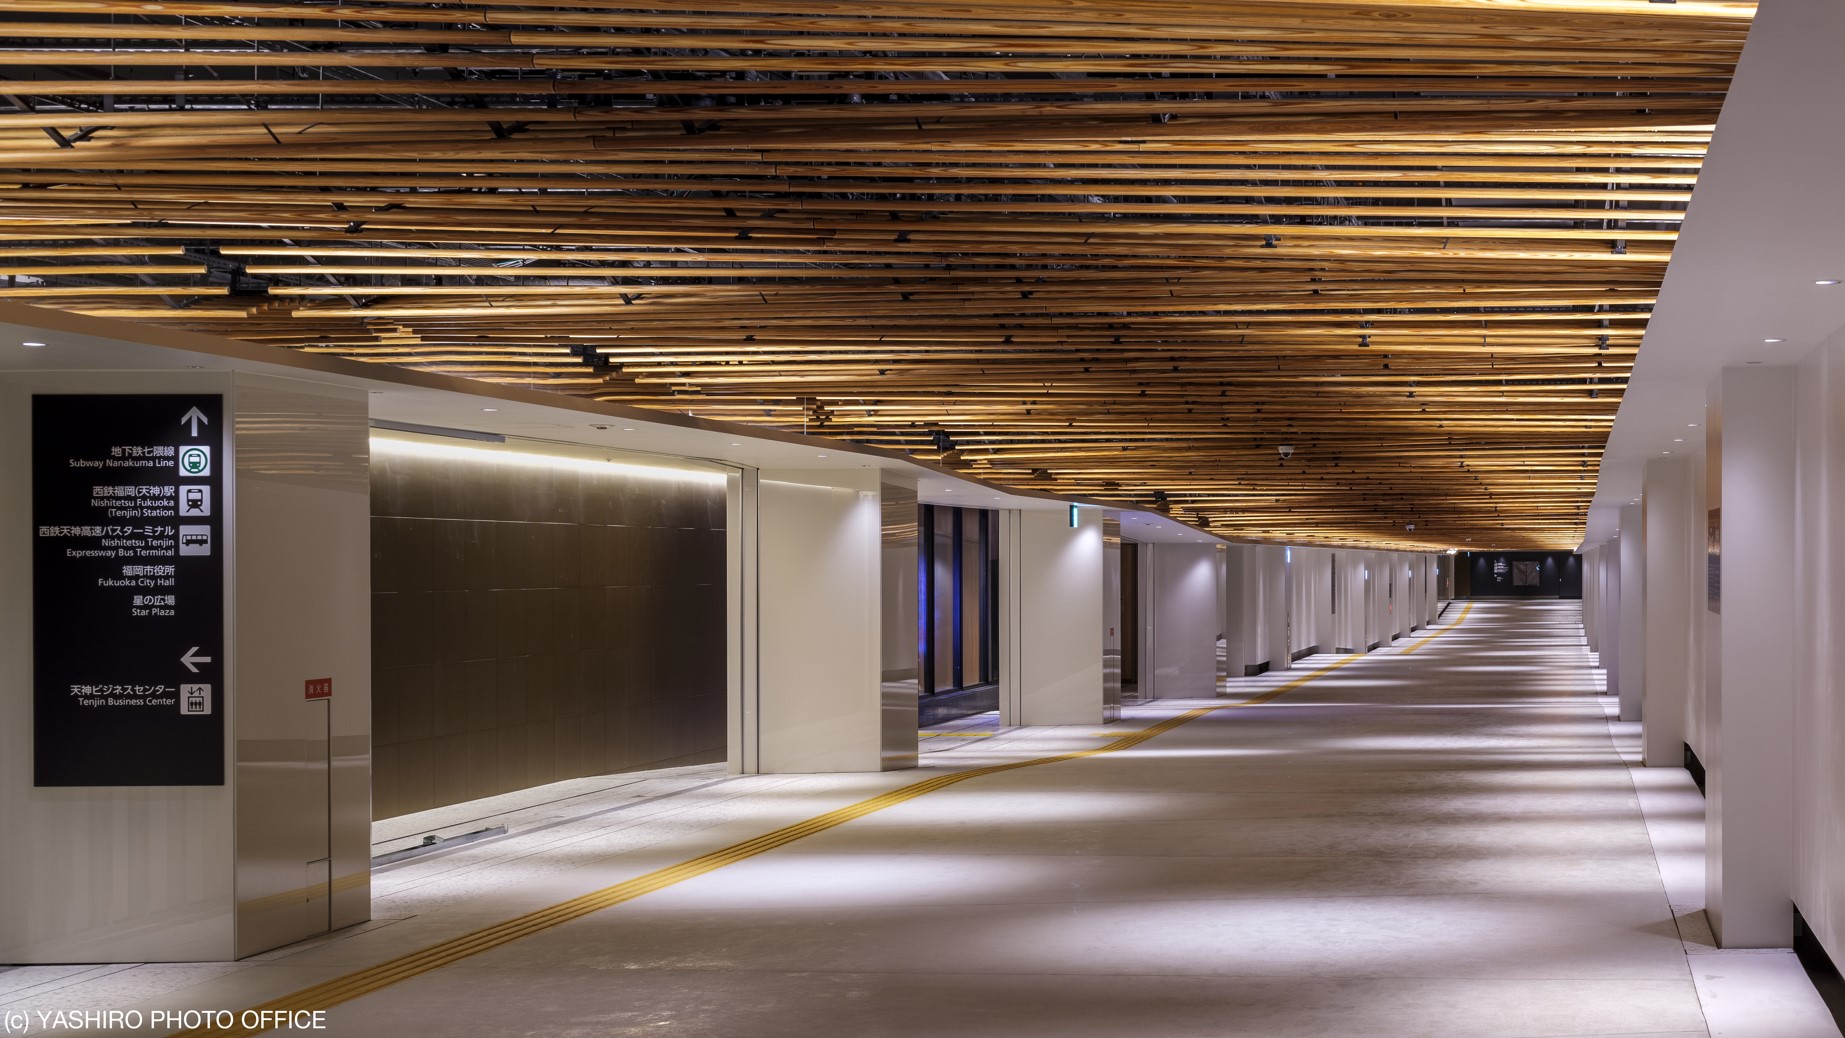 「因幡町通り地下通路」の位置図と内部。県産木材の不燃化や照明制御技術なその最新技術を活用している。 出所：プレスリリース